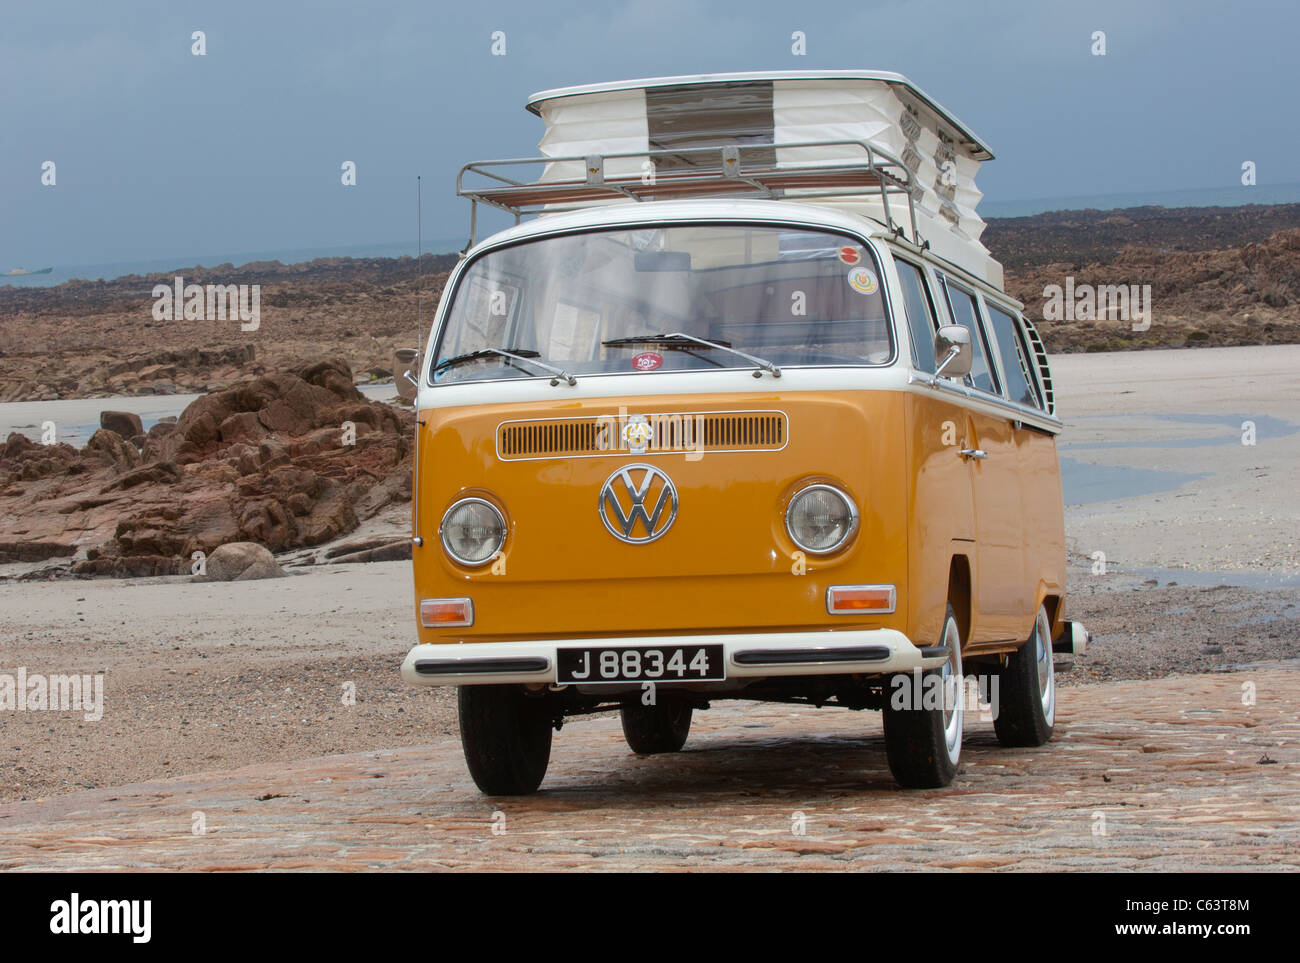 VW Volkswagen bay window Devon camper van classic raffreddato ad aria con propulsori posteriore van pop up tetto spiaggia sollevata arancione bianco Foto Stock